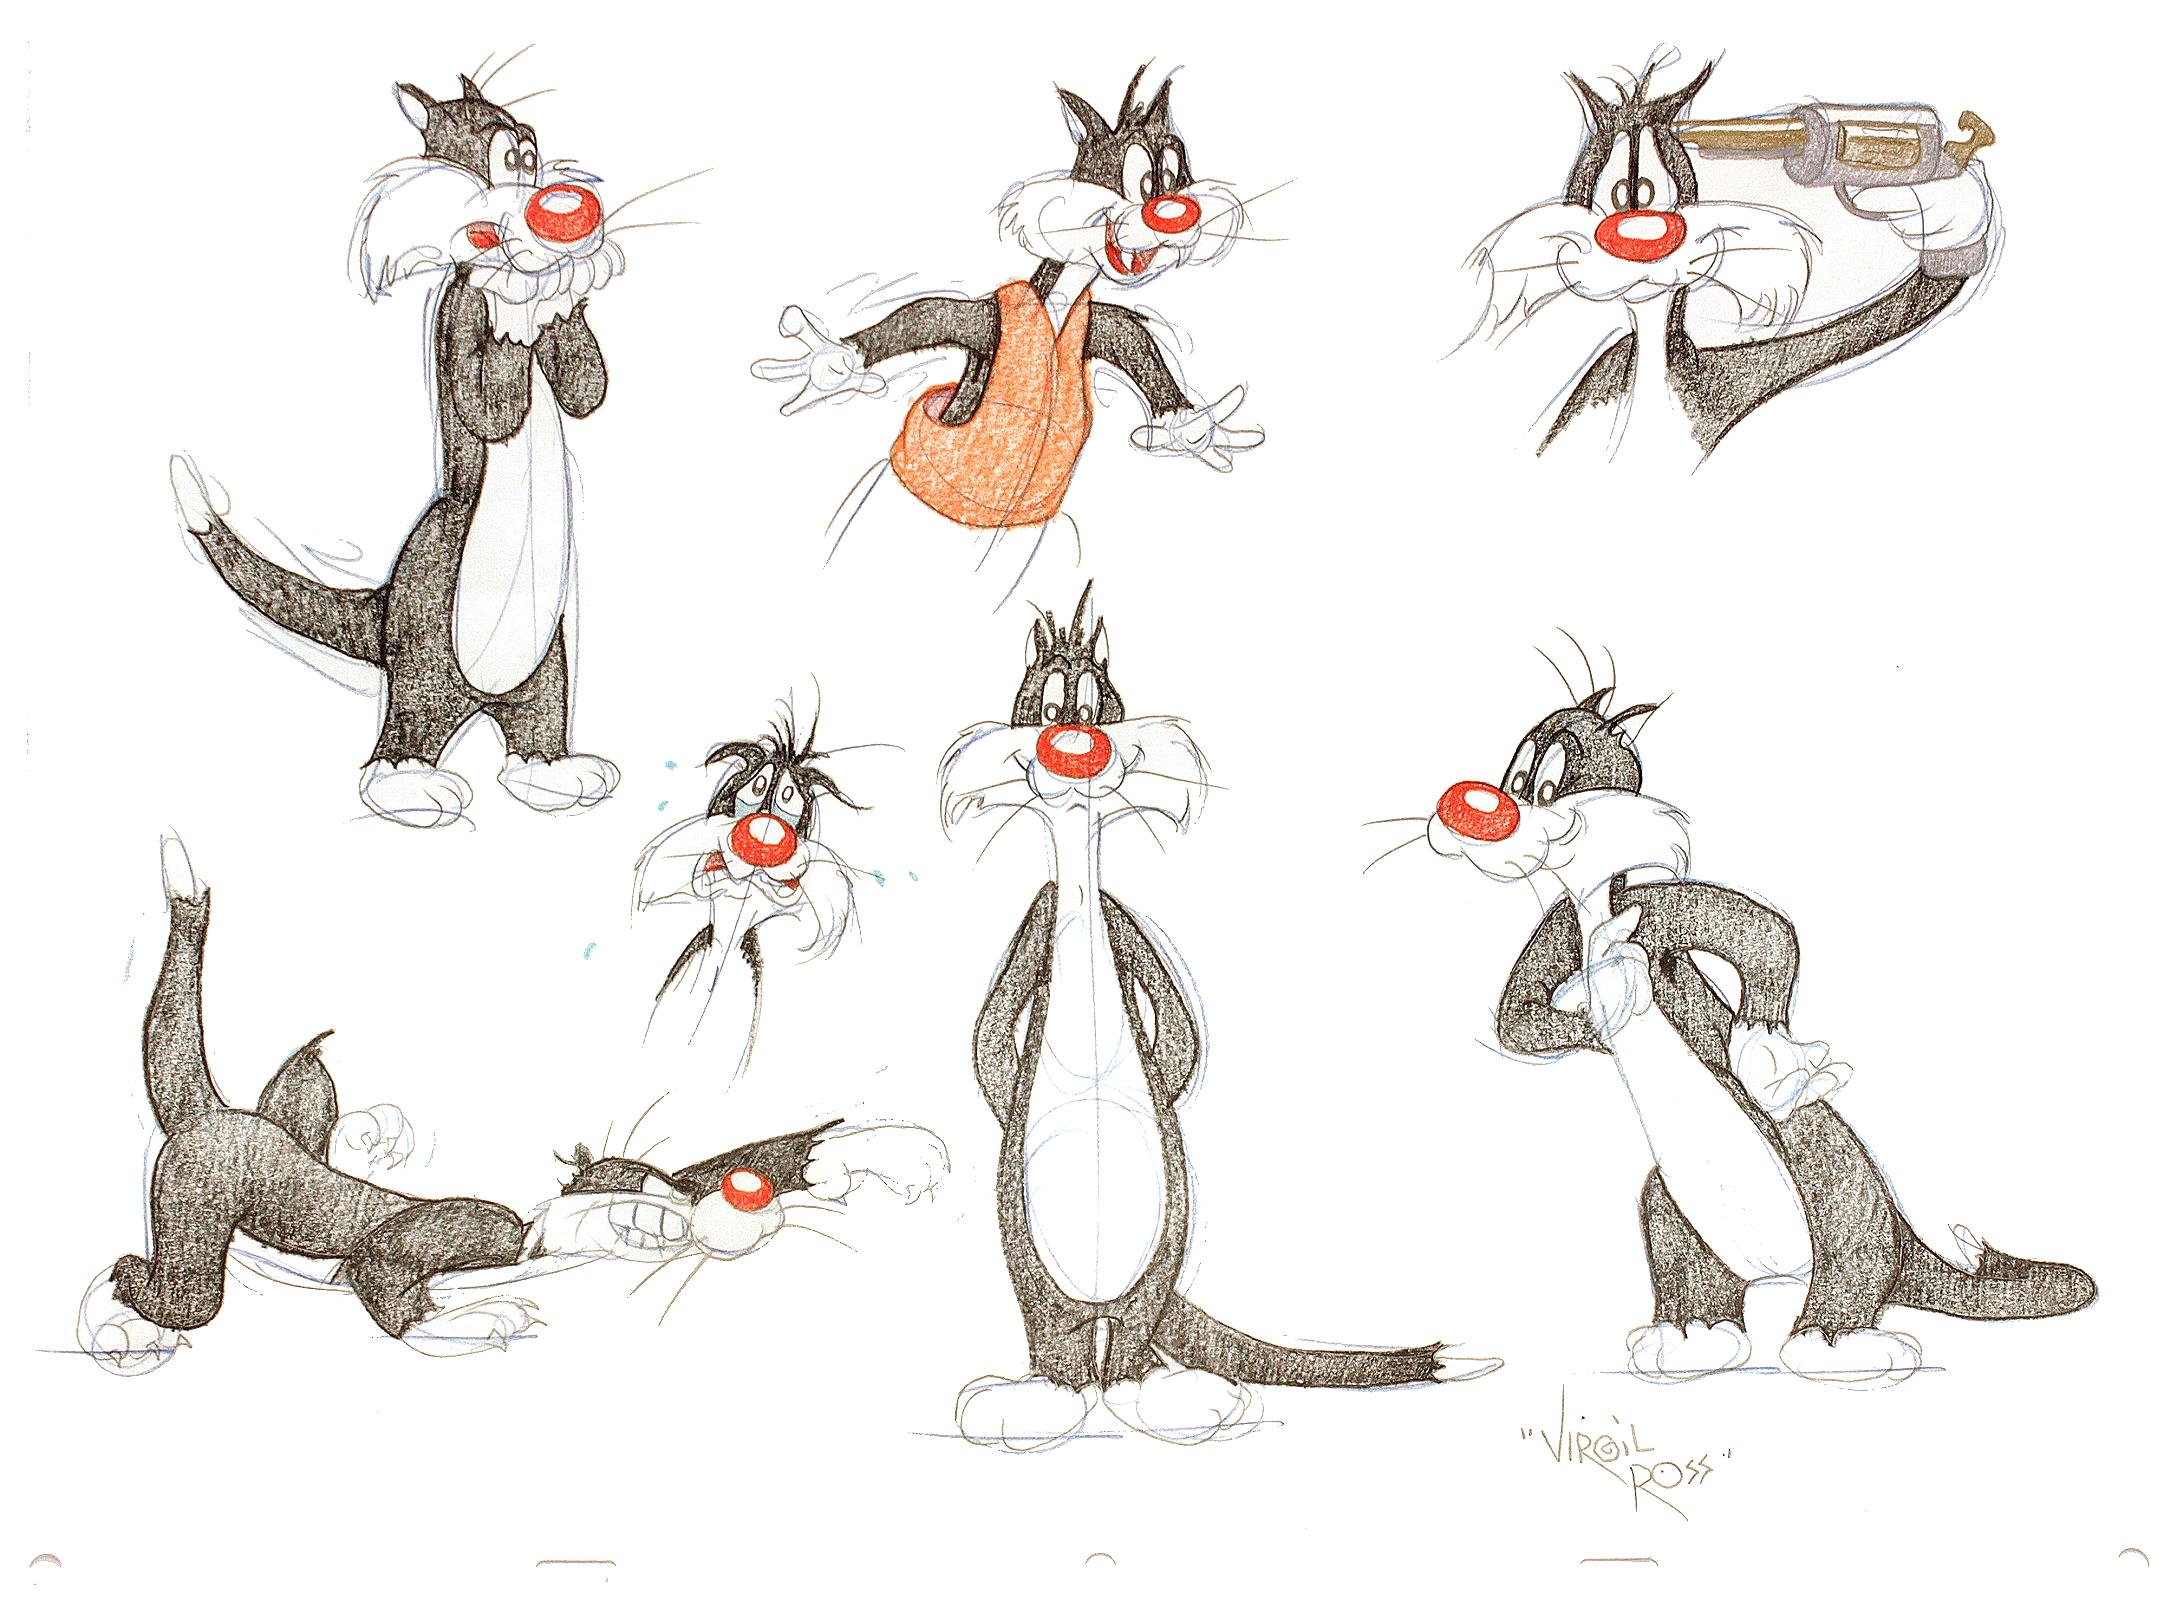 ARTISTE : Virgil Ross. 

TITRE : Sylvestre le chat. (Sept dessins originaux).

ÉDITEUR : Warner Brothers Studios, (c.1990's)

DESCRIPTION : SEPT DESSINS ORIGINAUX DE SILVESTER THE CAT. 17